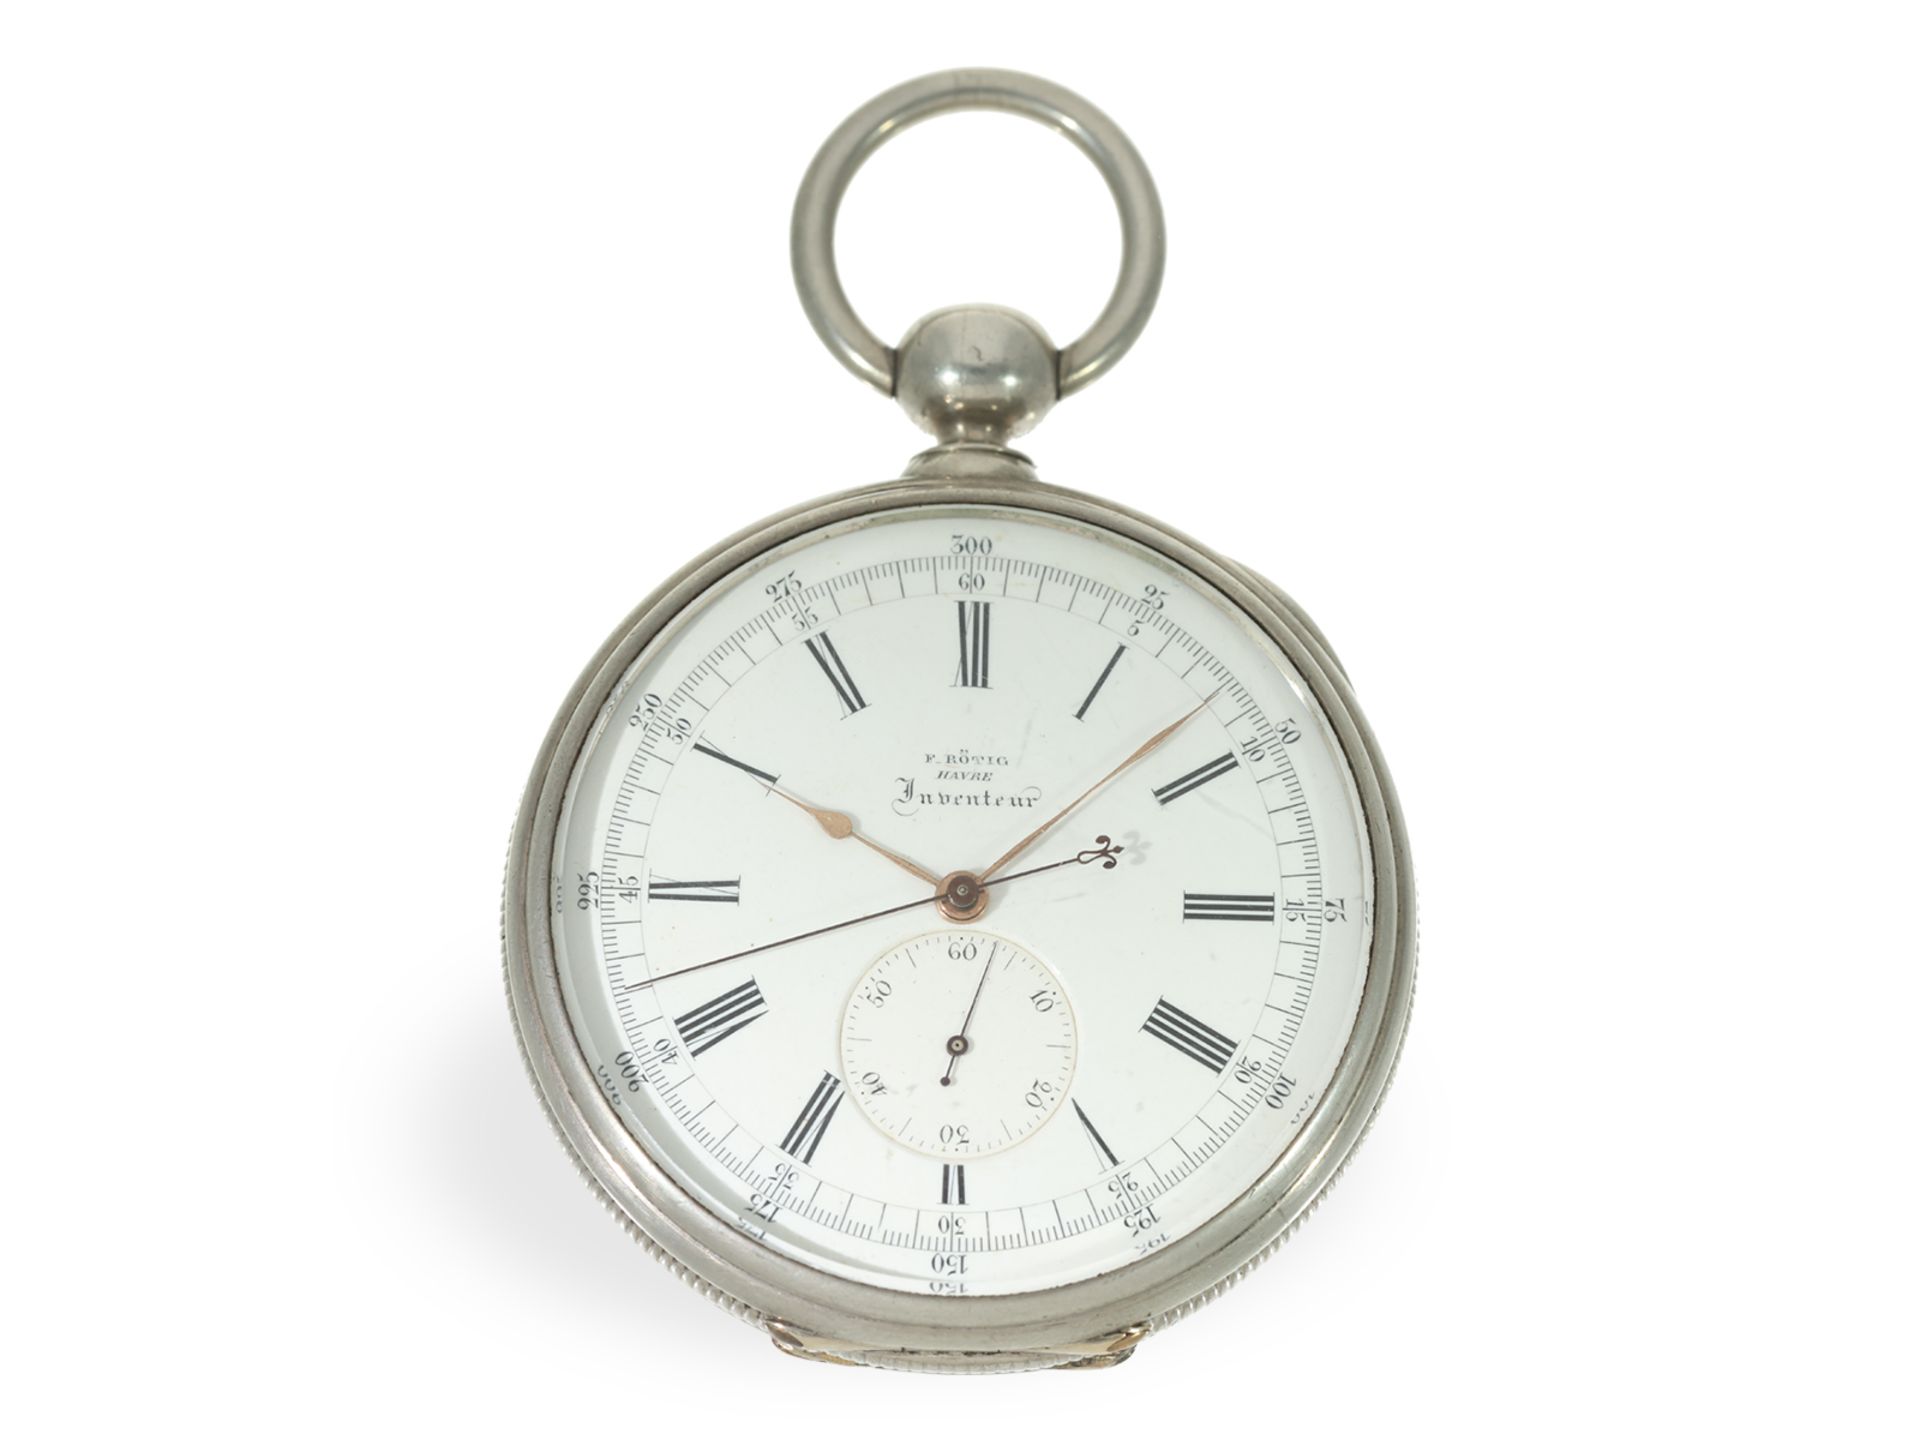 Taschenuhr: extrem seltenes französisches Beobachtungschronometer, Rötig Havre "Inventeur", ca.1865